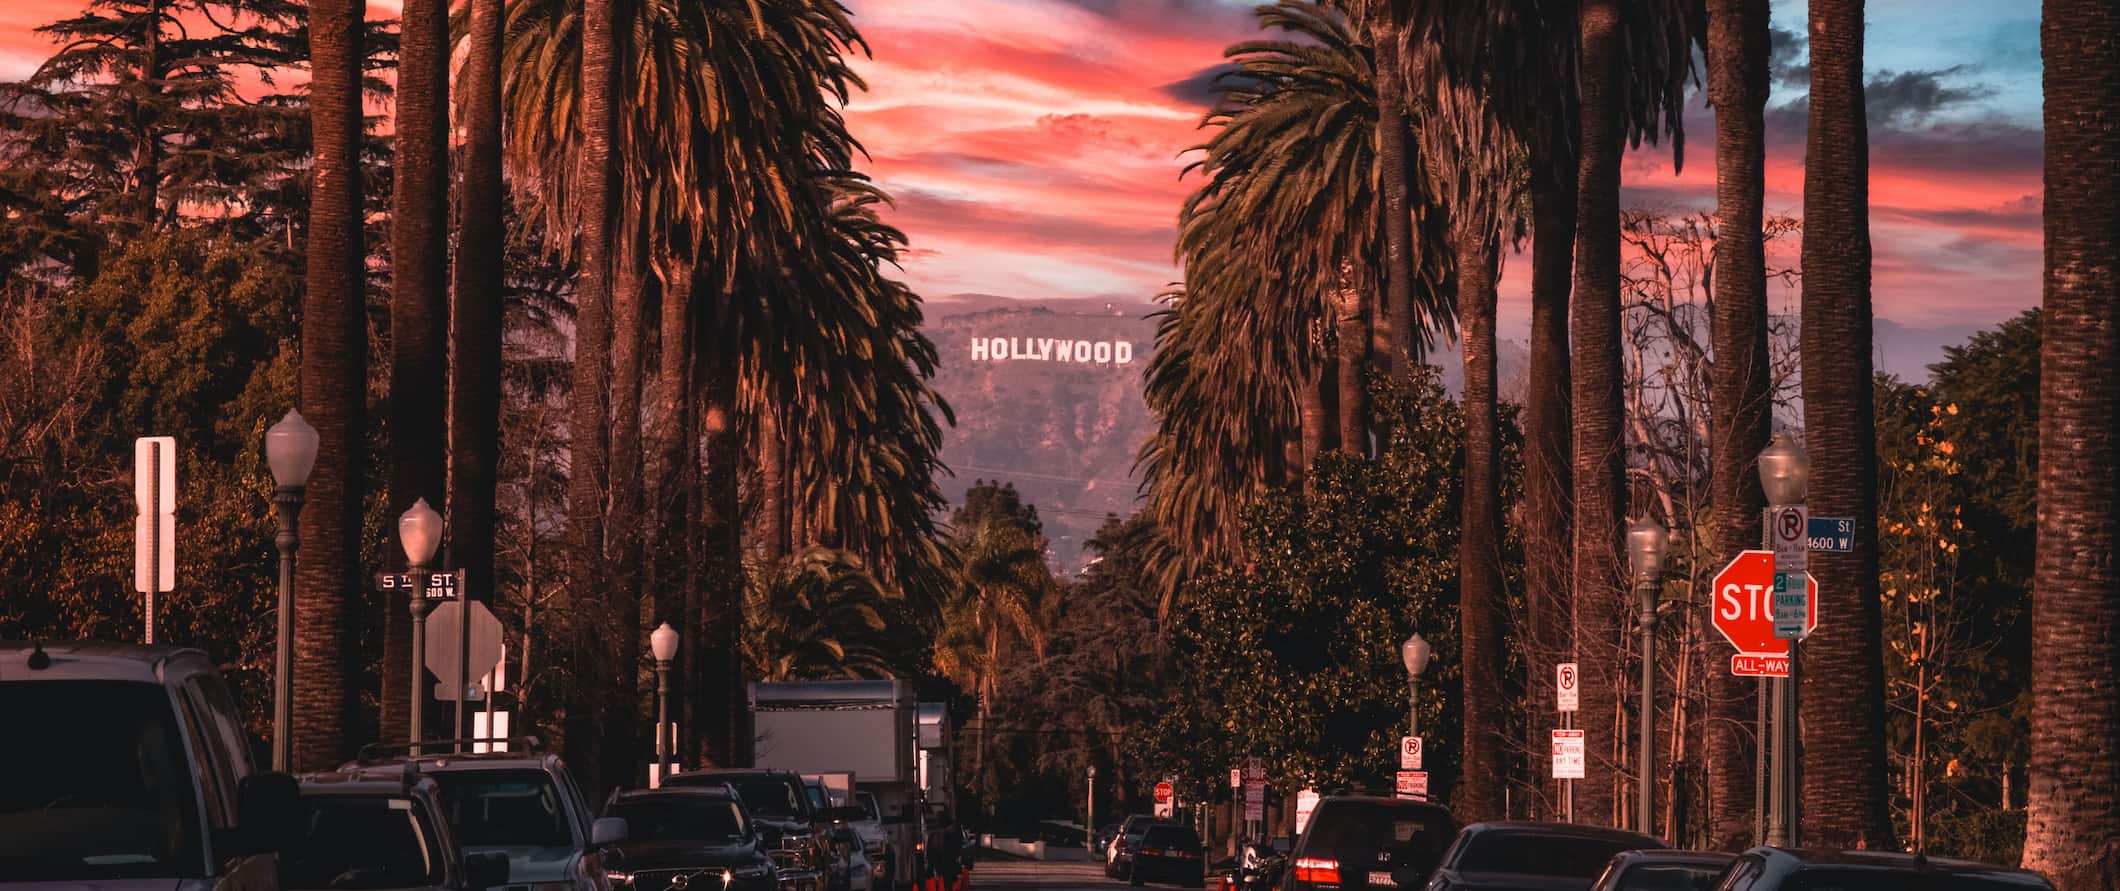 Estrada ladeada por palmeiras na movimentada Los Angeles, EUA